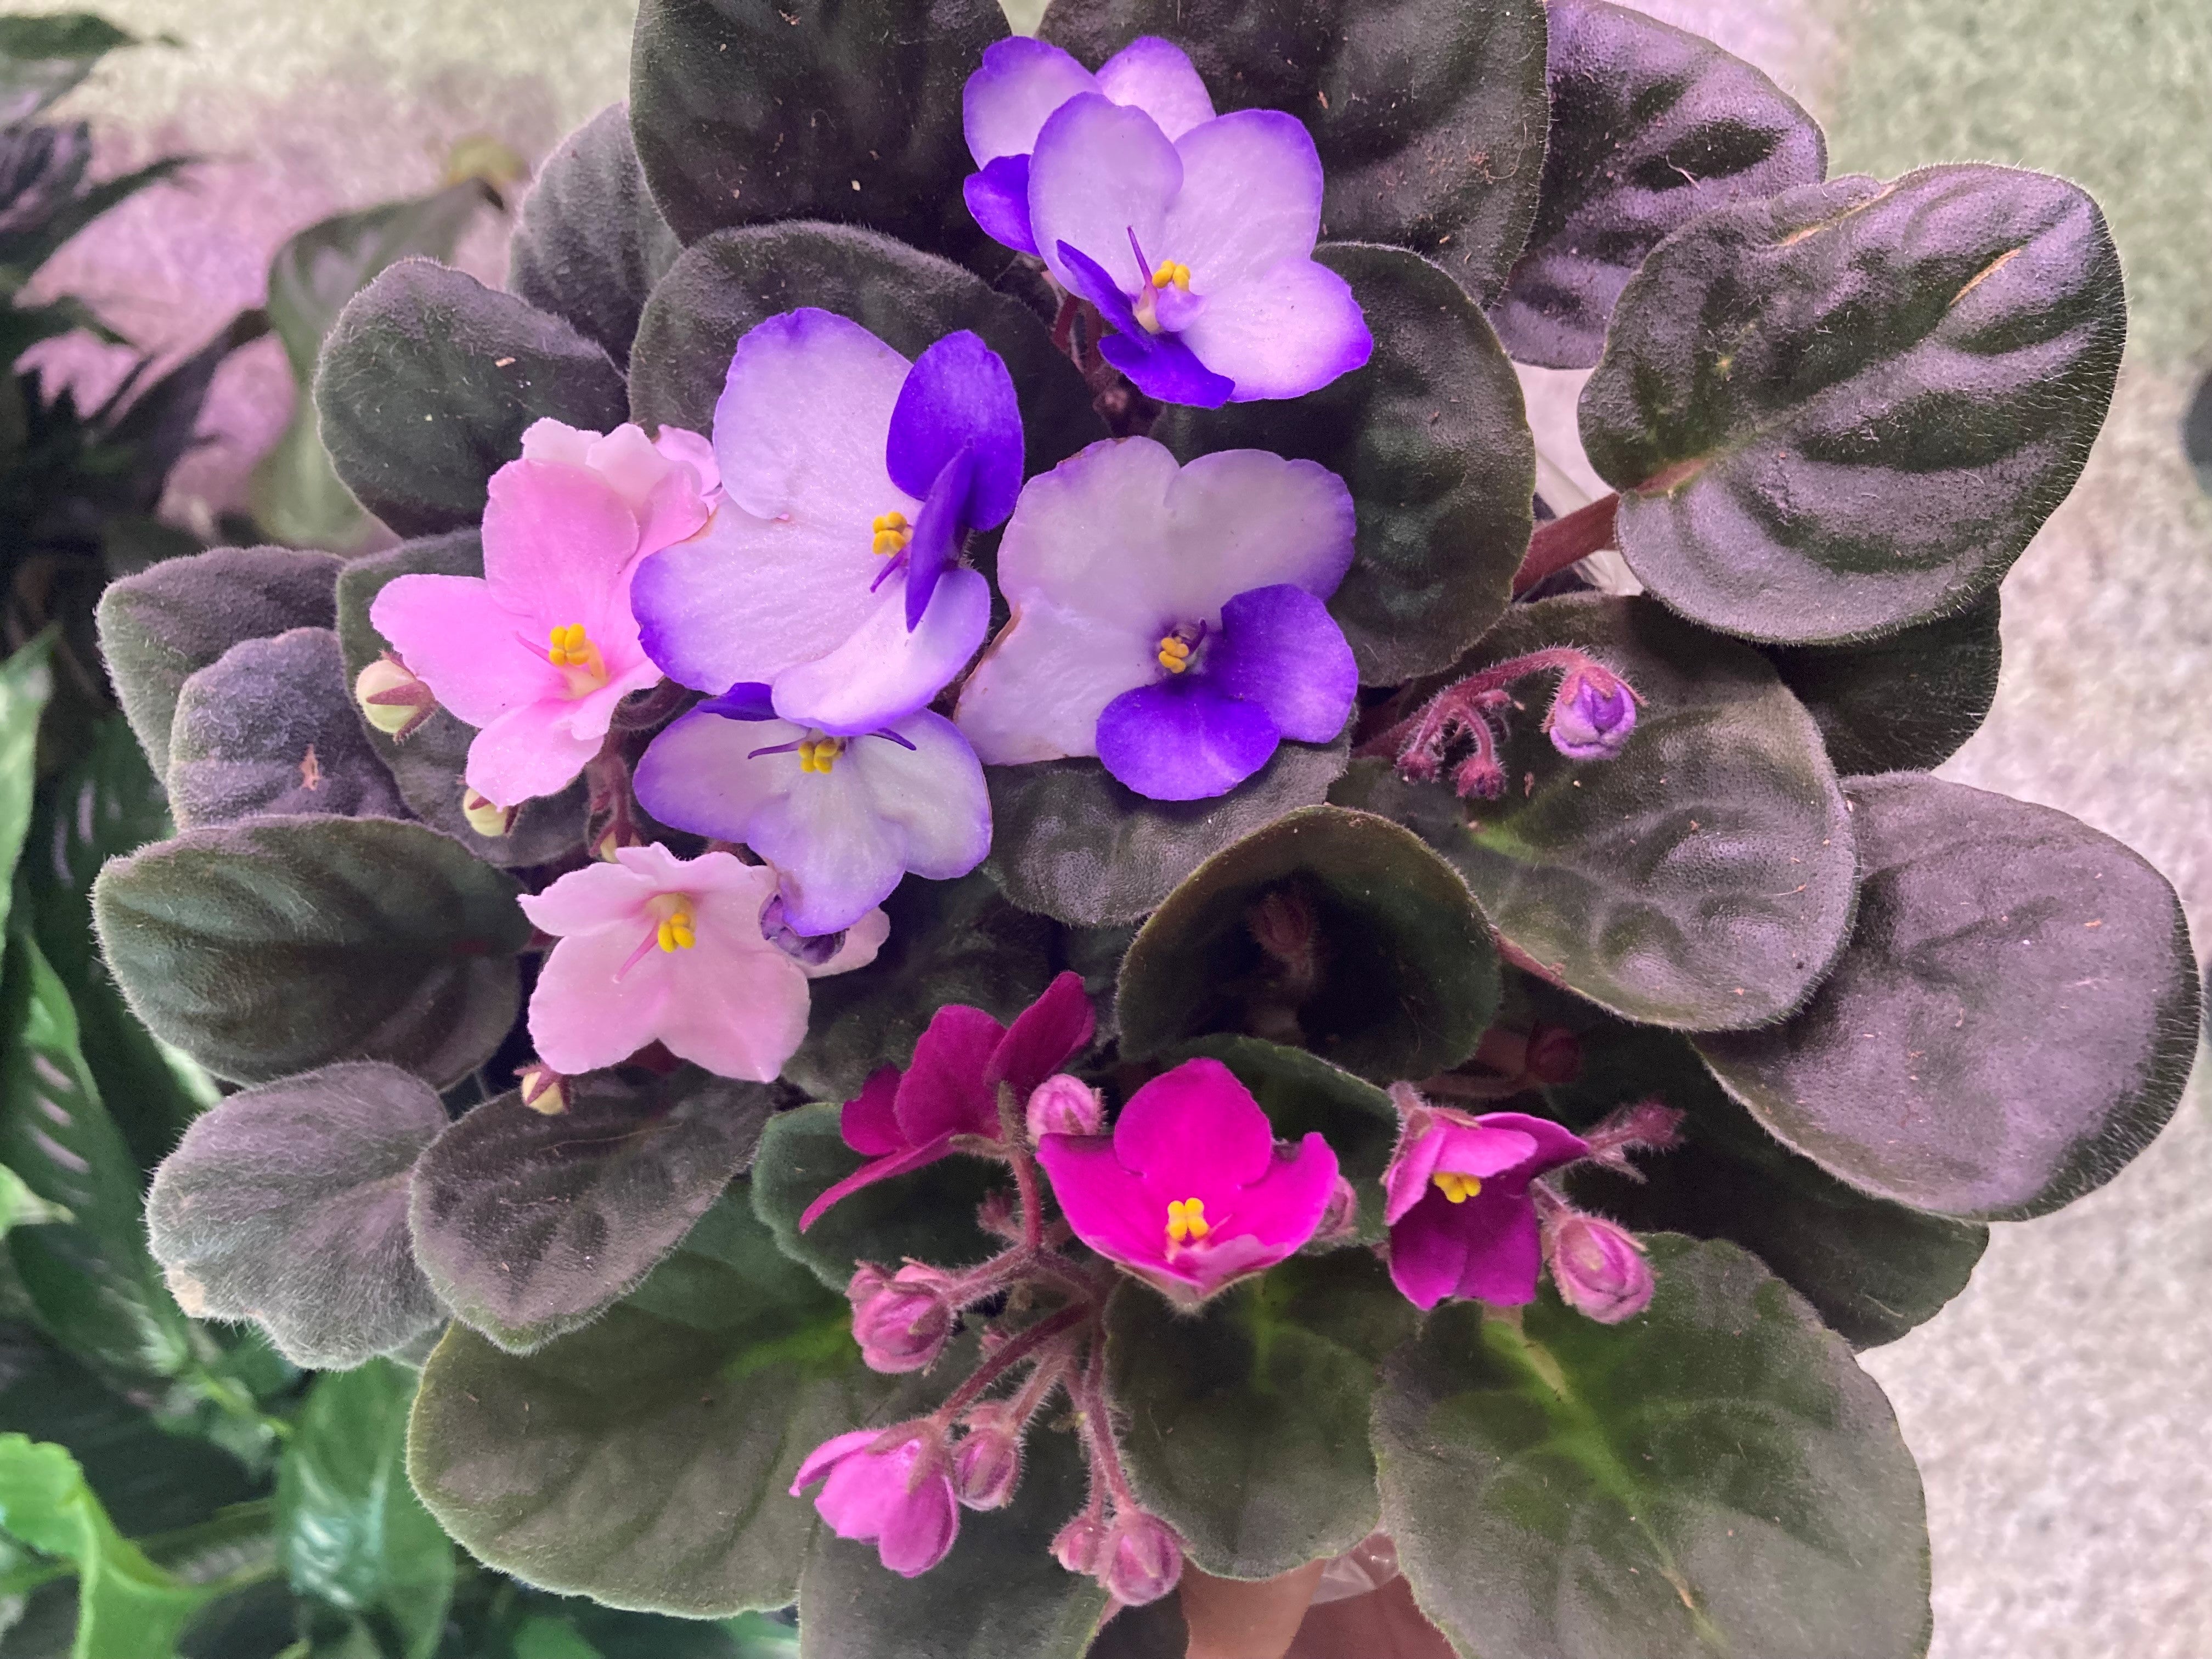 Saintpaulia - Violettes Africaines - African violet – Faucher Botanix